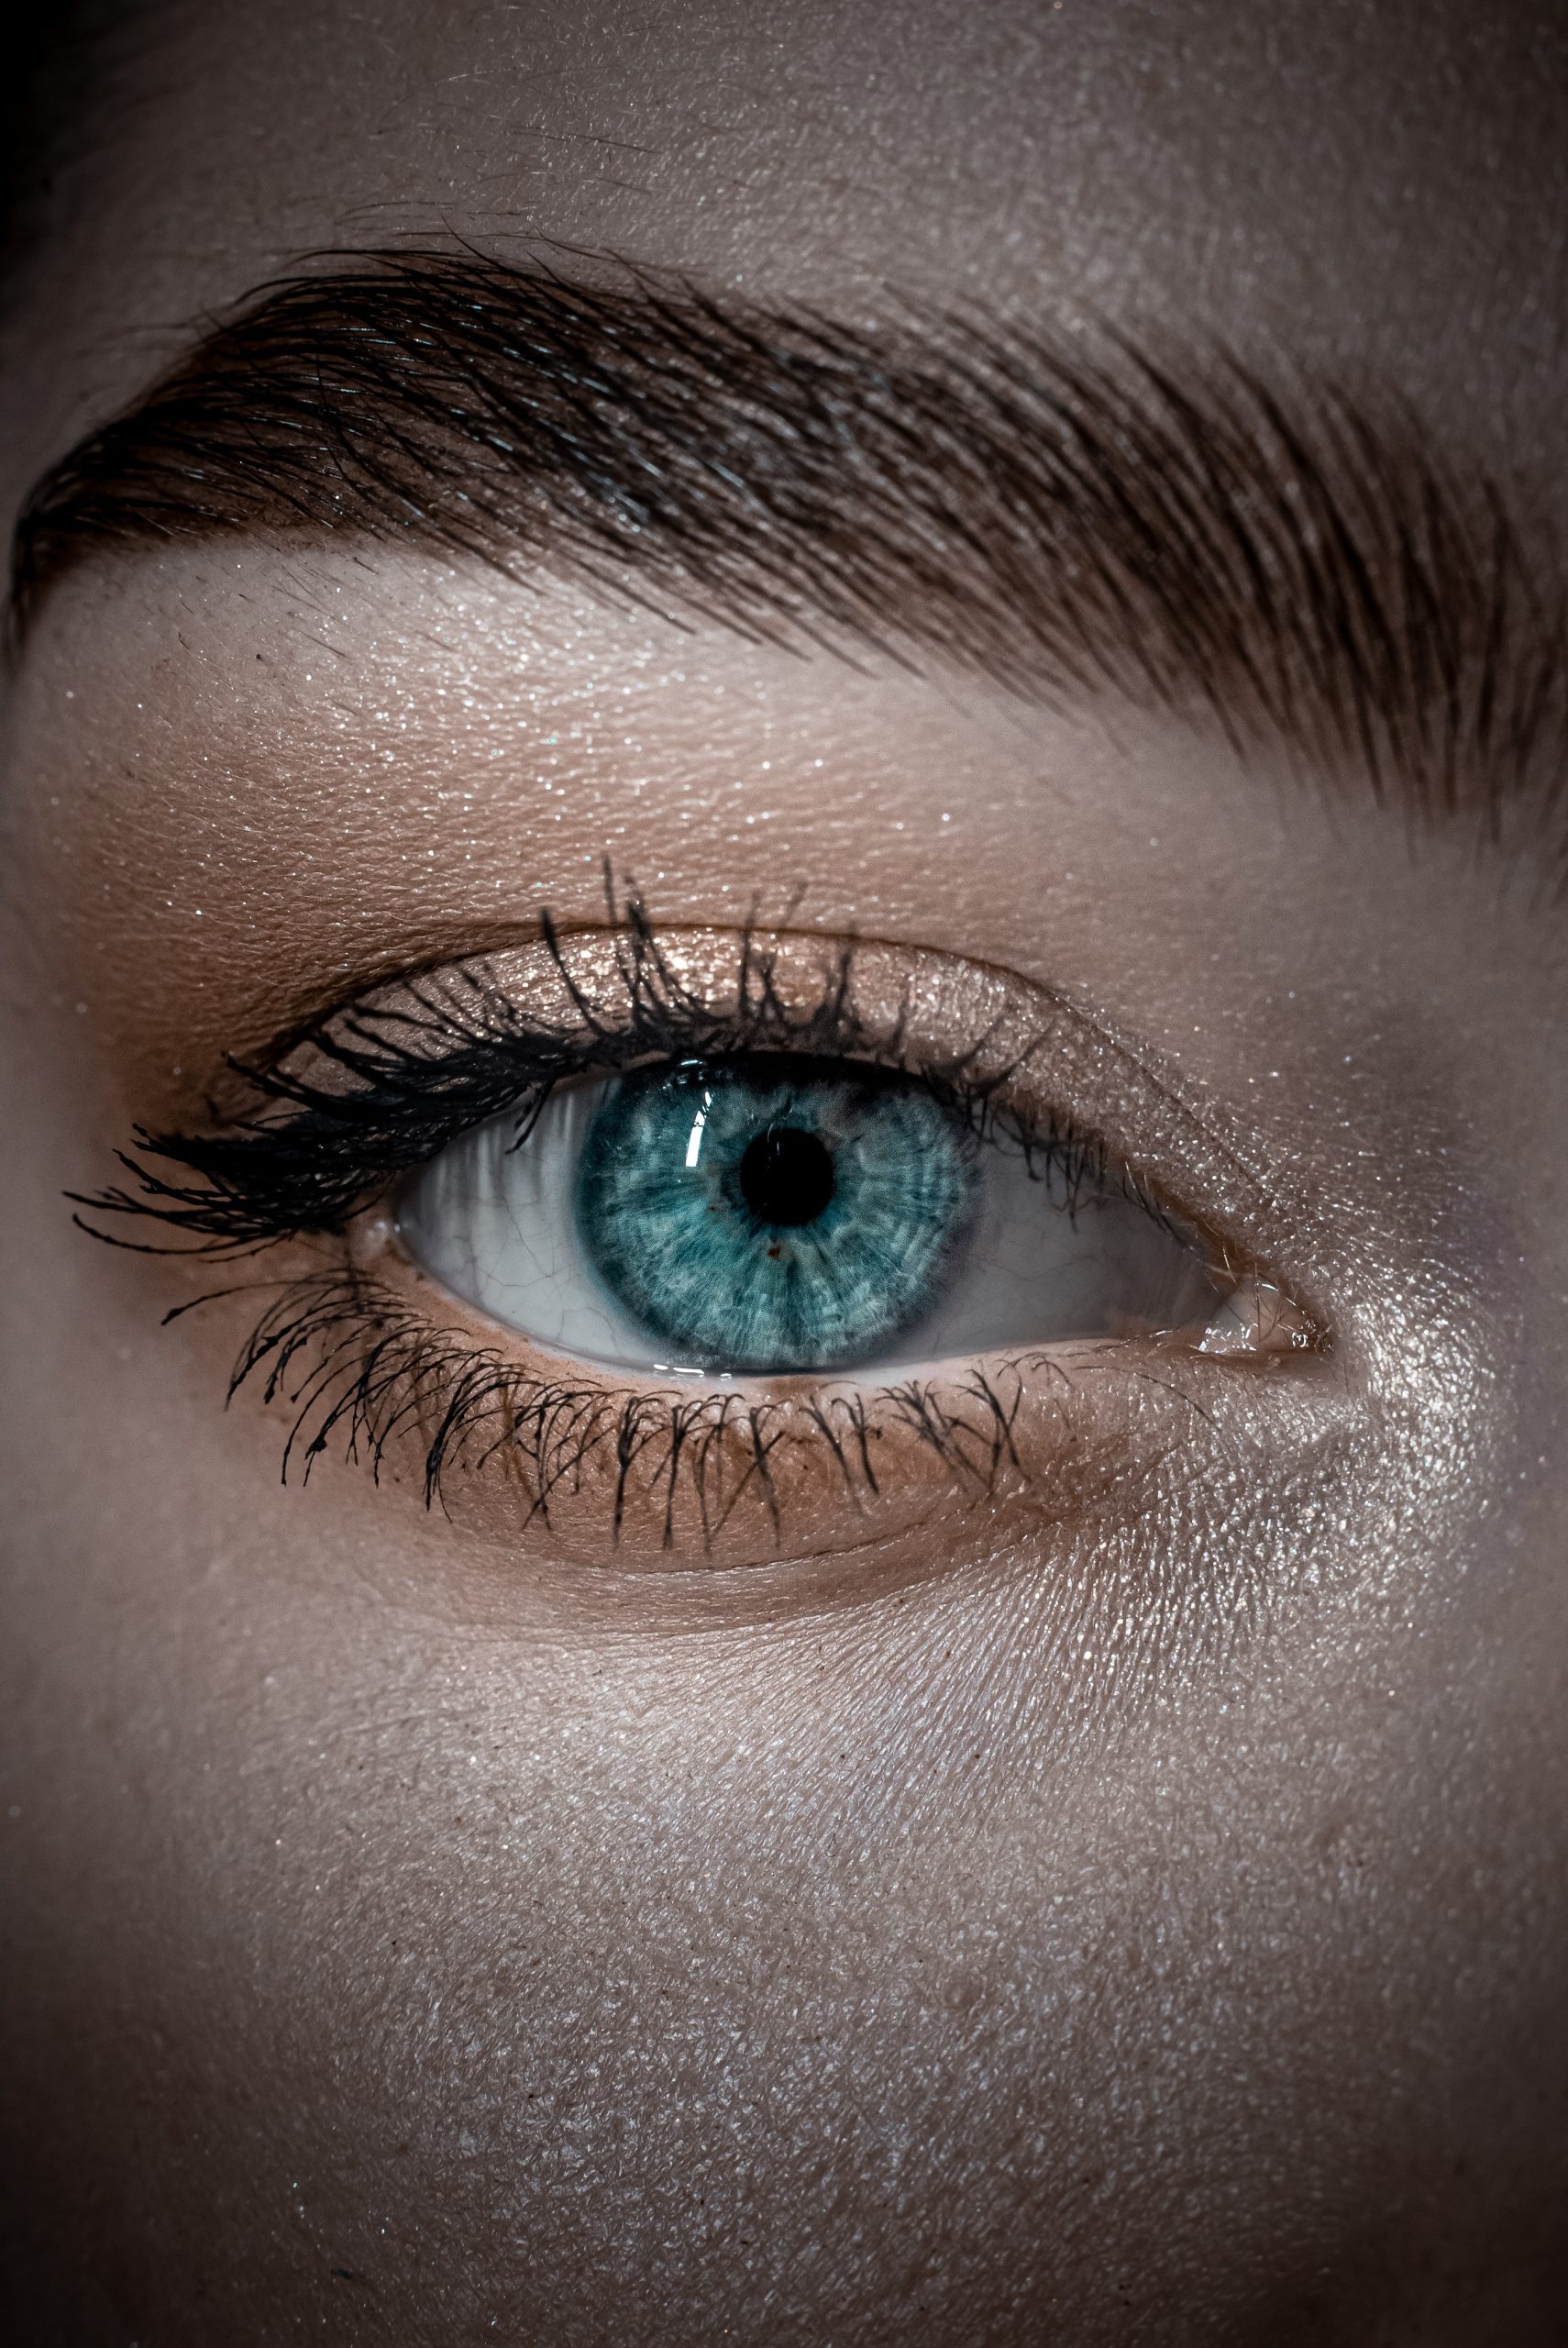 blepharoplasty or eyelid surgery